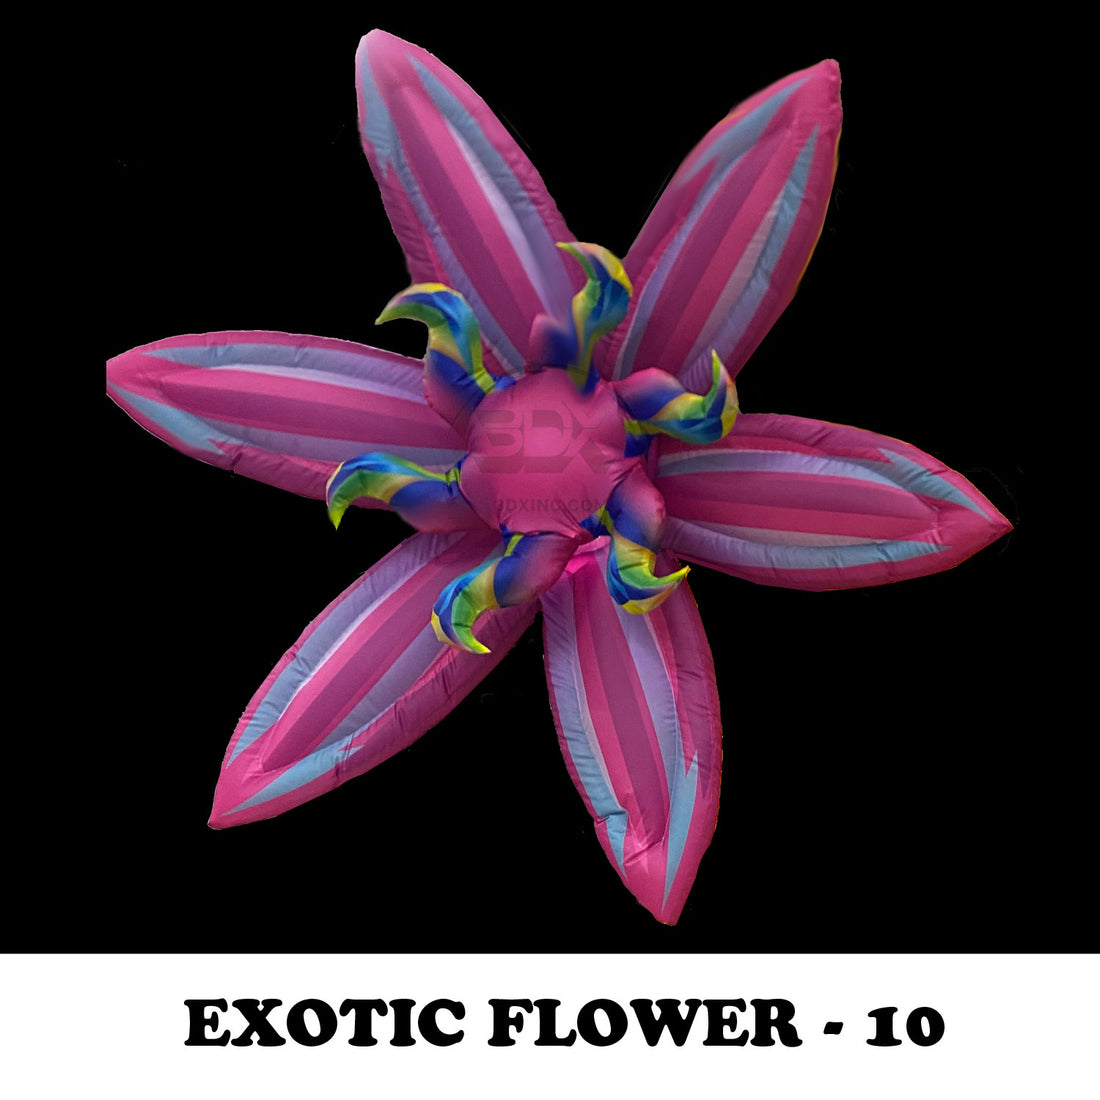 EXOTIC FLOWER - 10